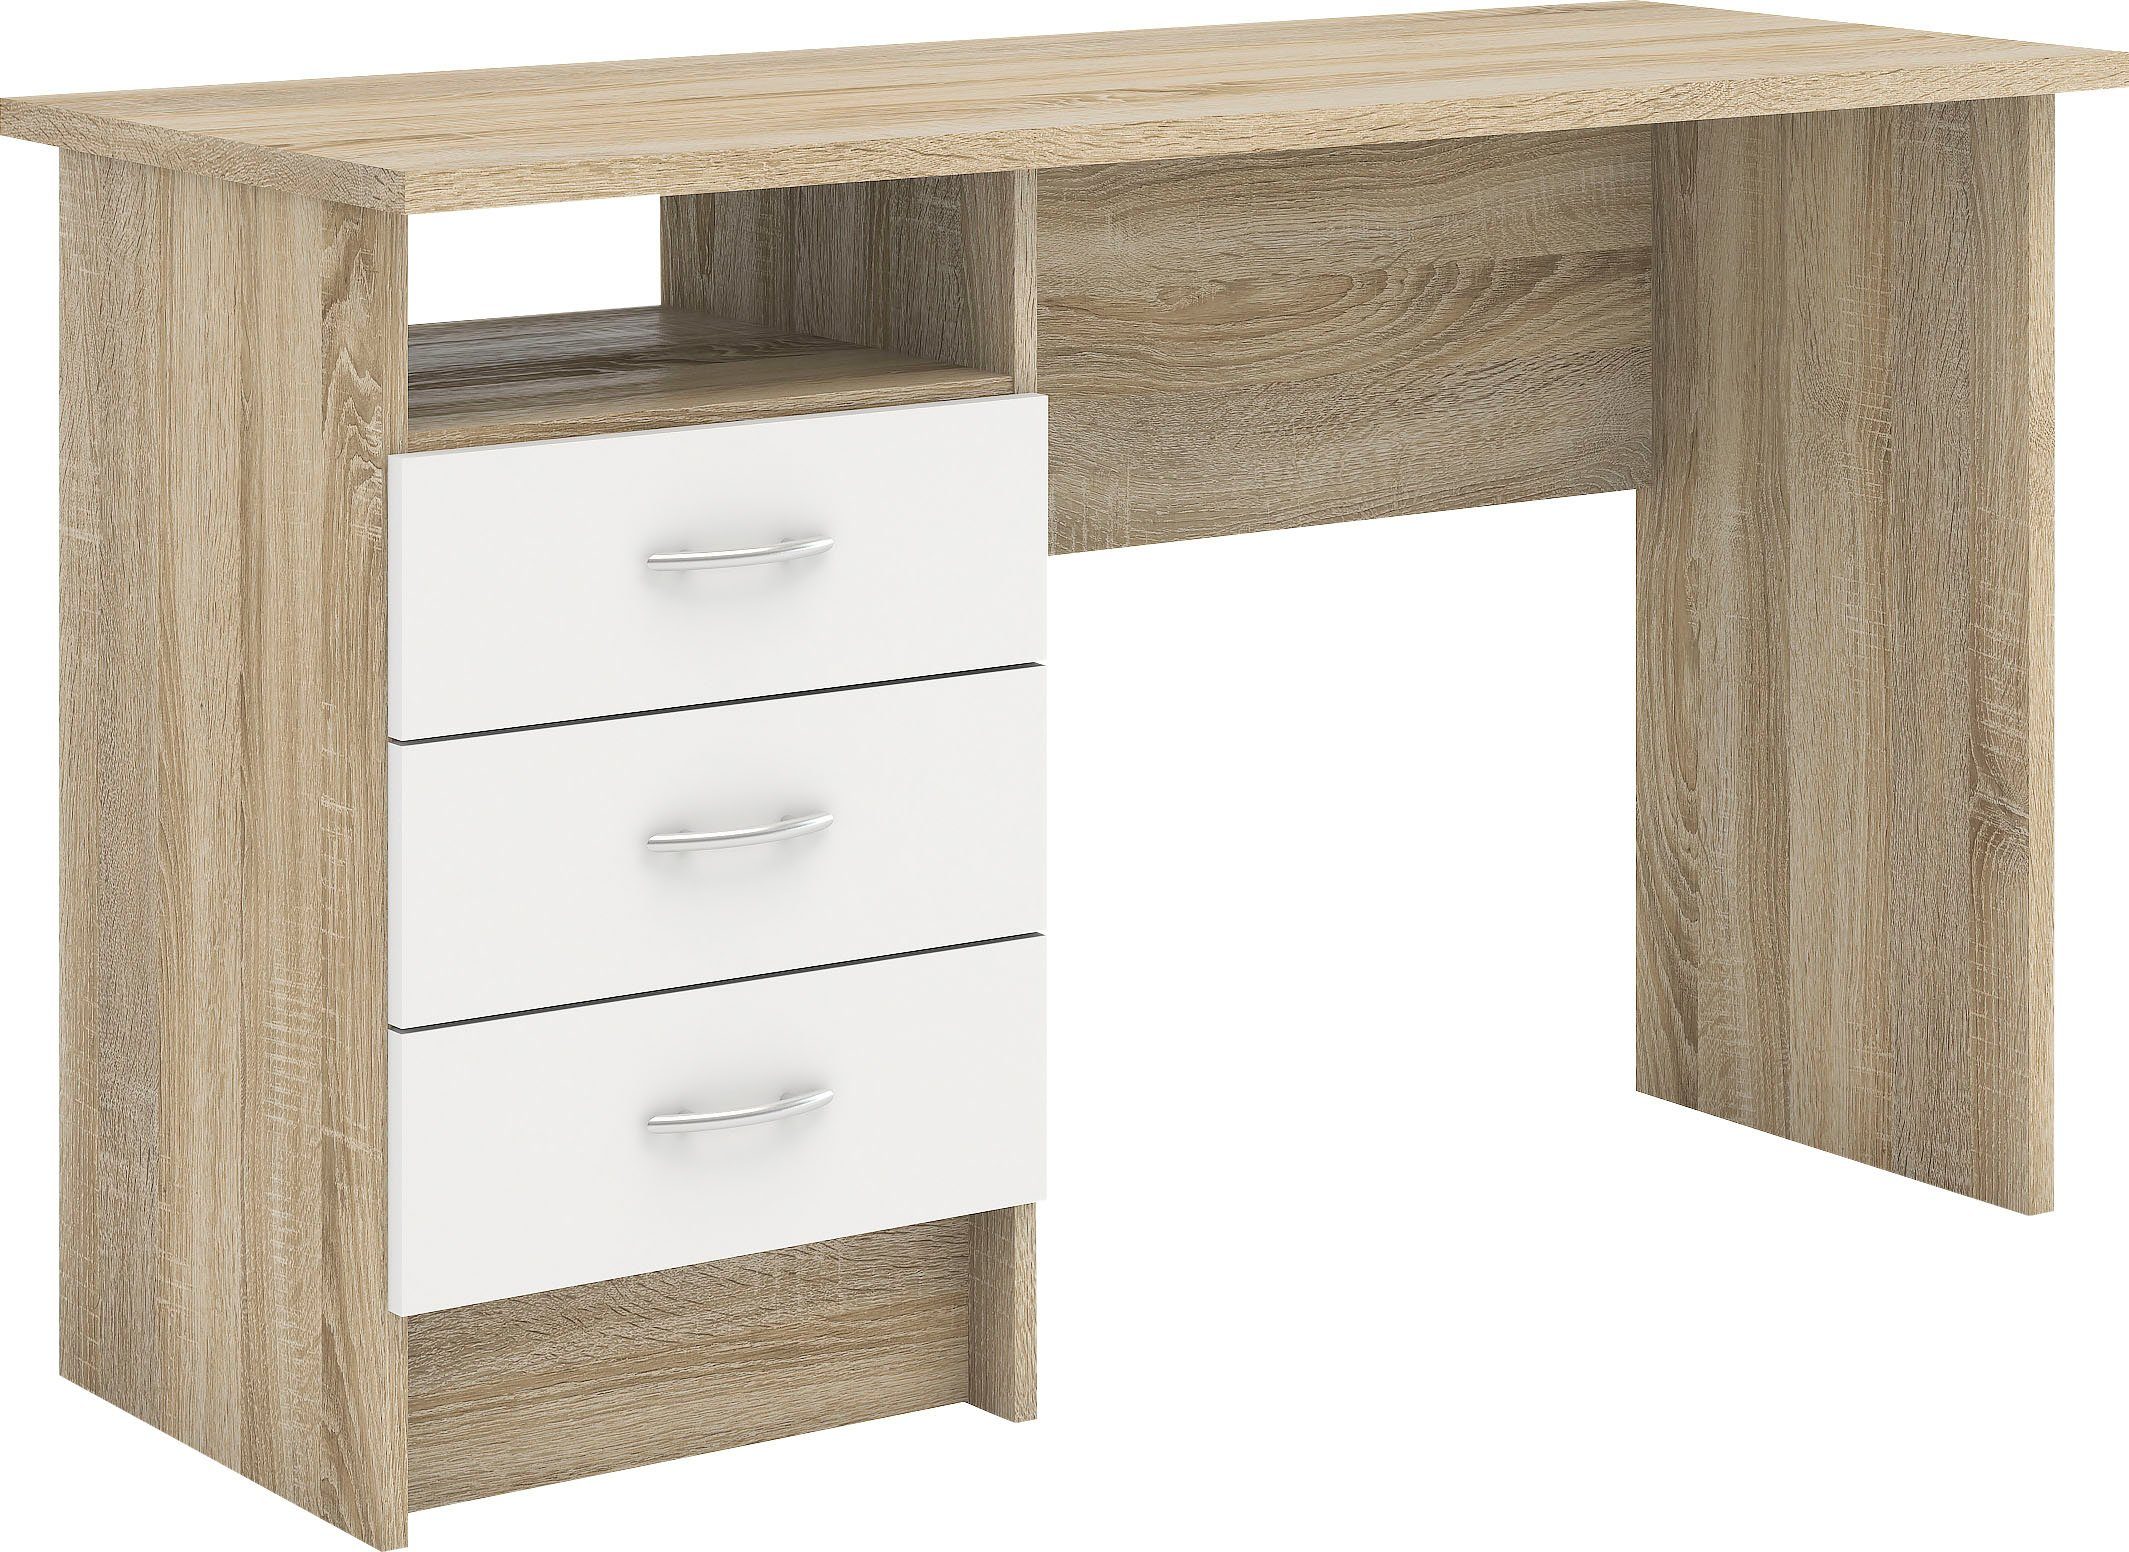 Home affaire Schreibtisch Plus, mit vielen Stauraummöglichkeiten, zeitloses Design weiß/naturfarben